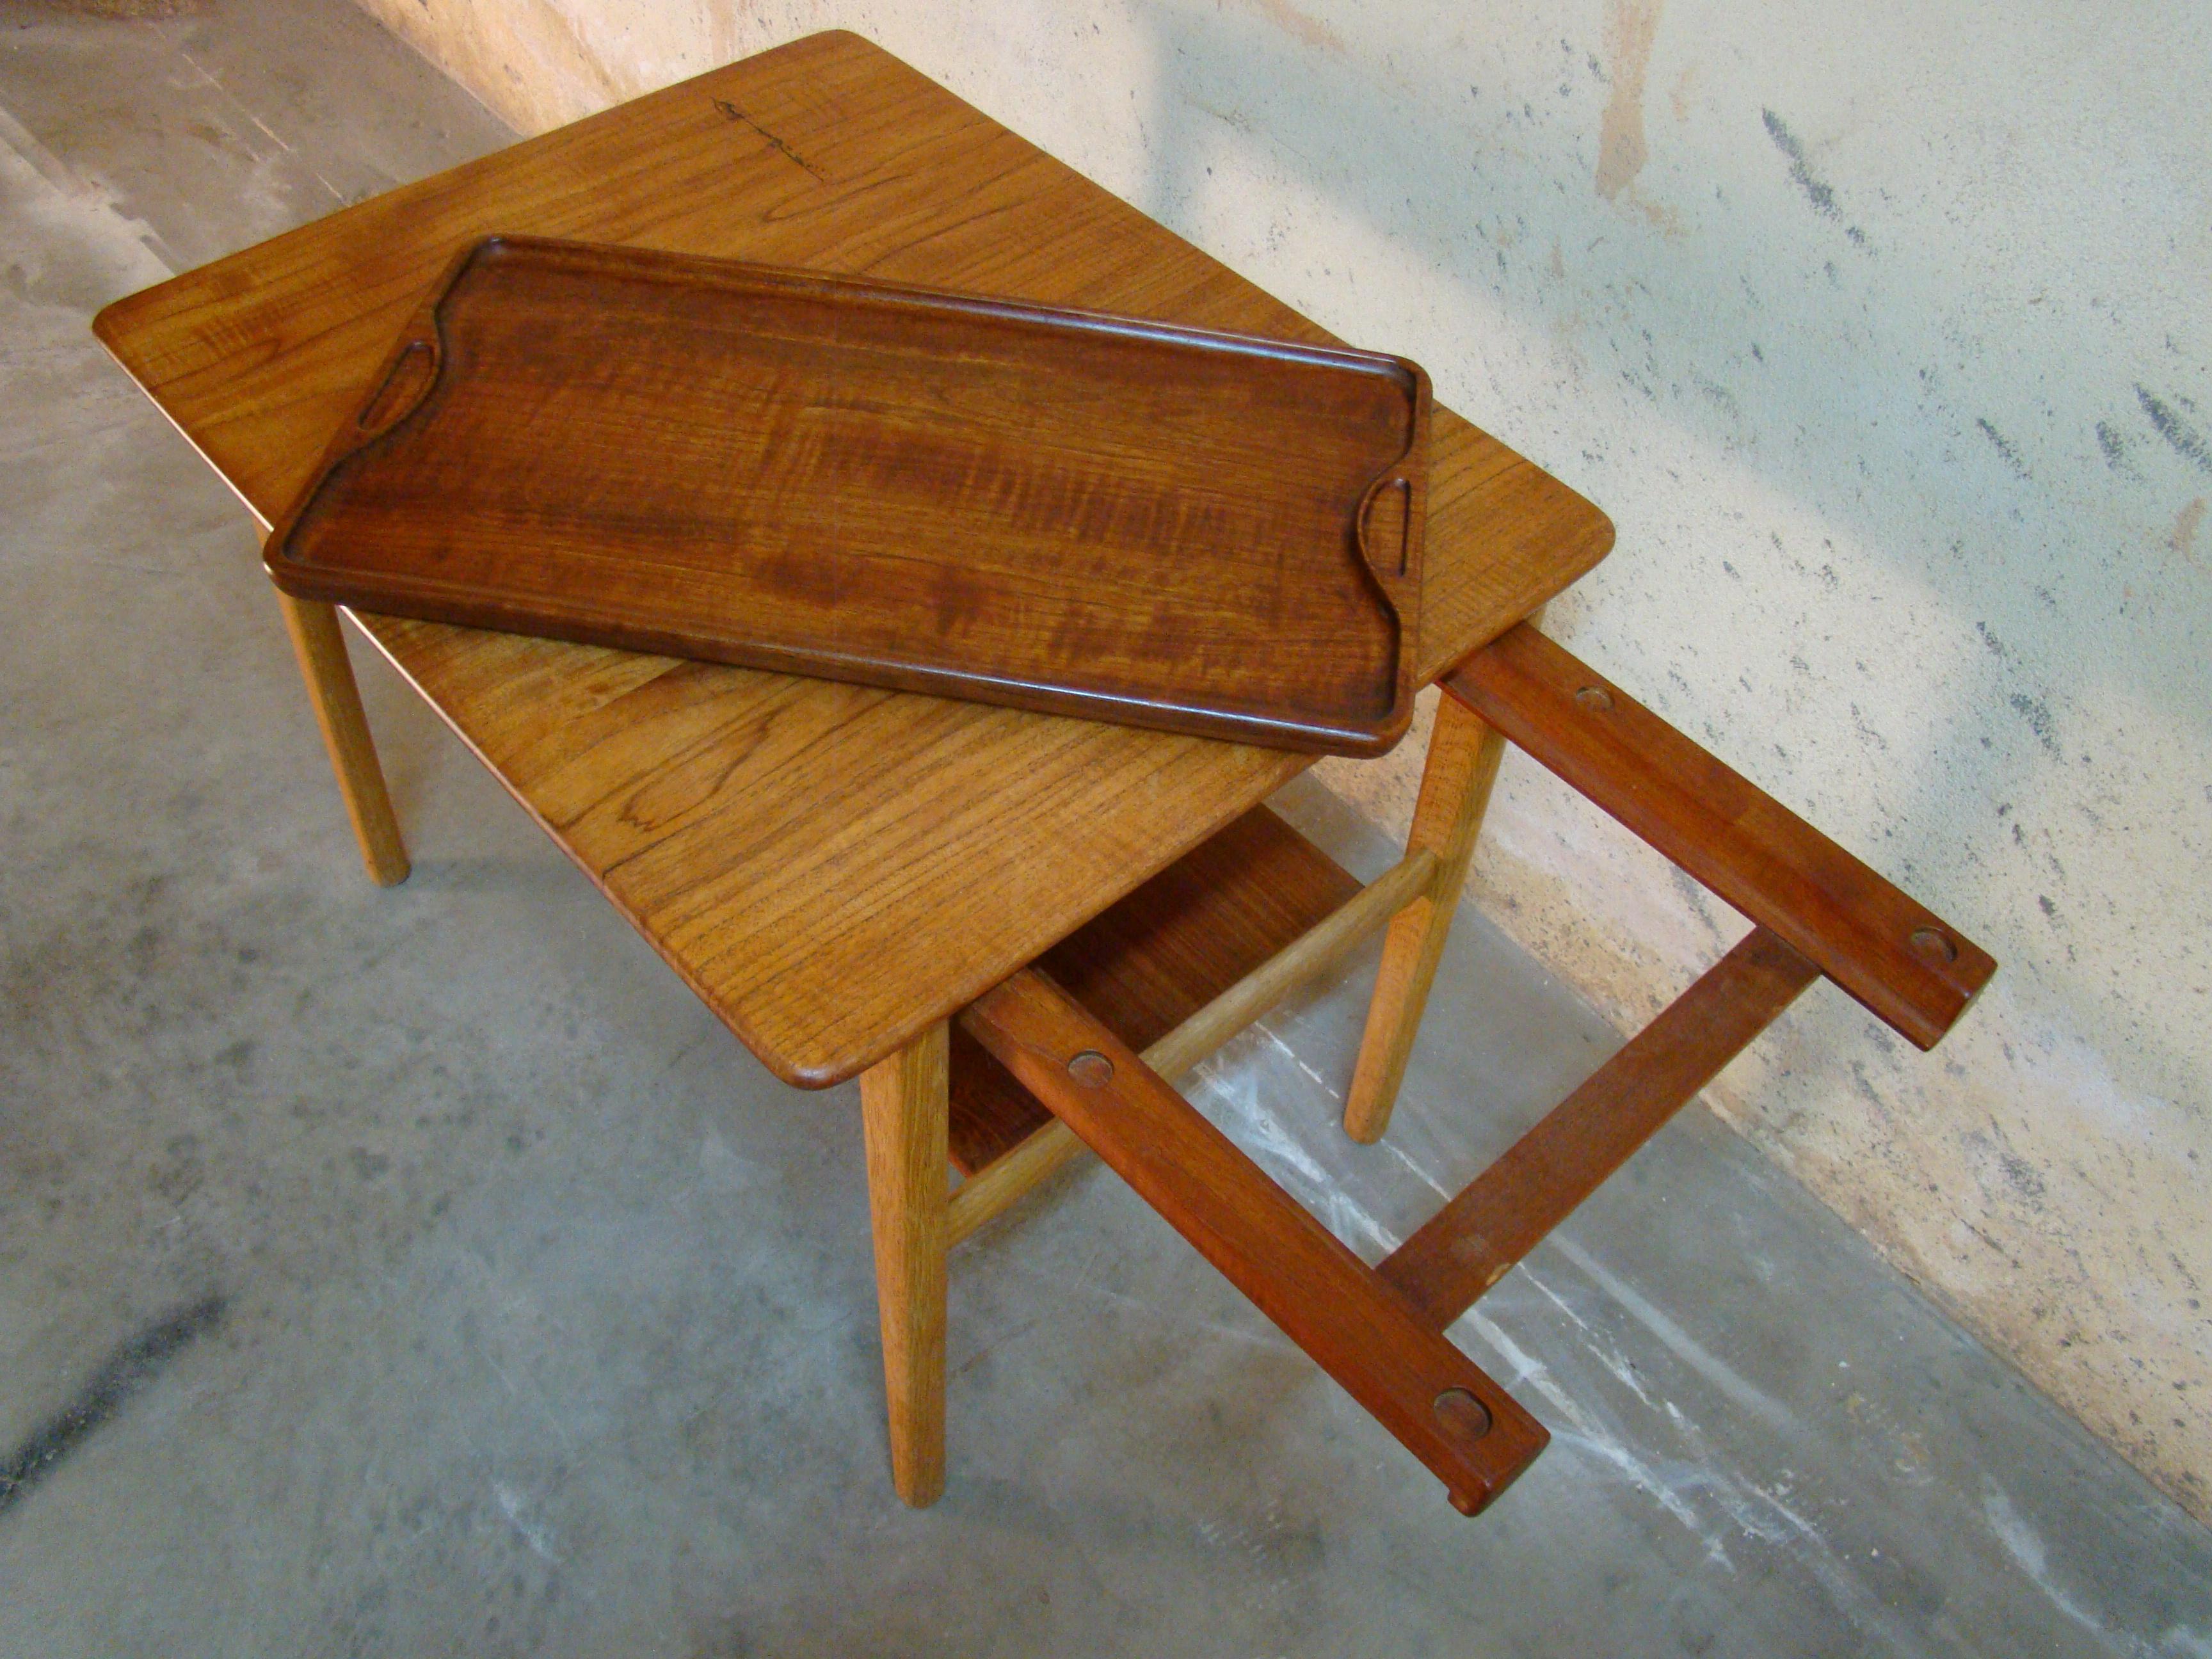 Danish Hans Wegner Occasional or End Tray Table in Oak and Teak, 1950s, Denmark